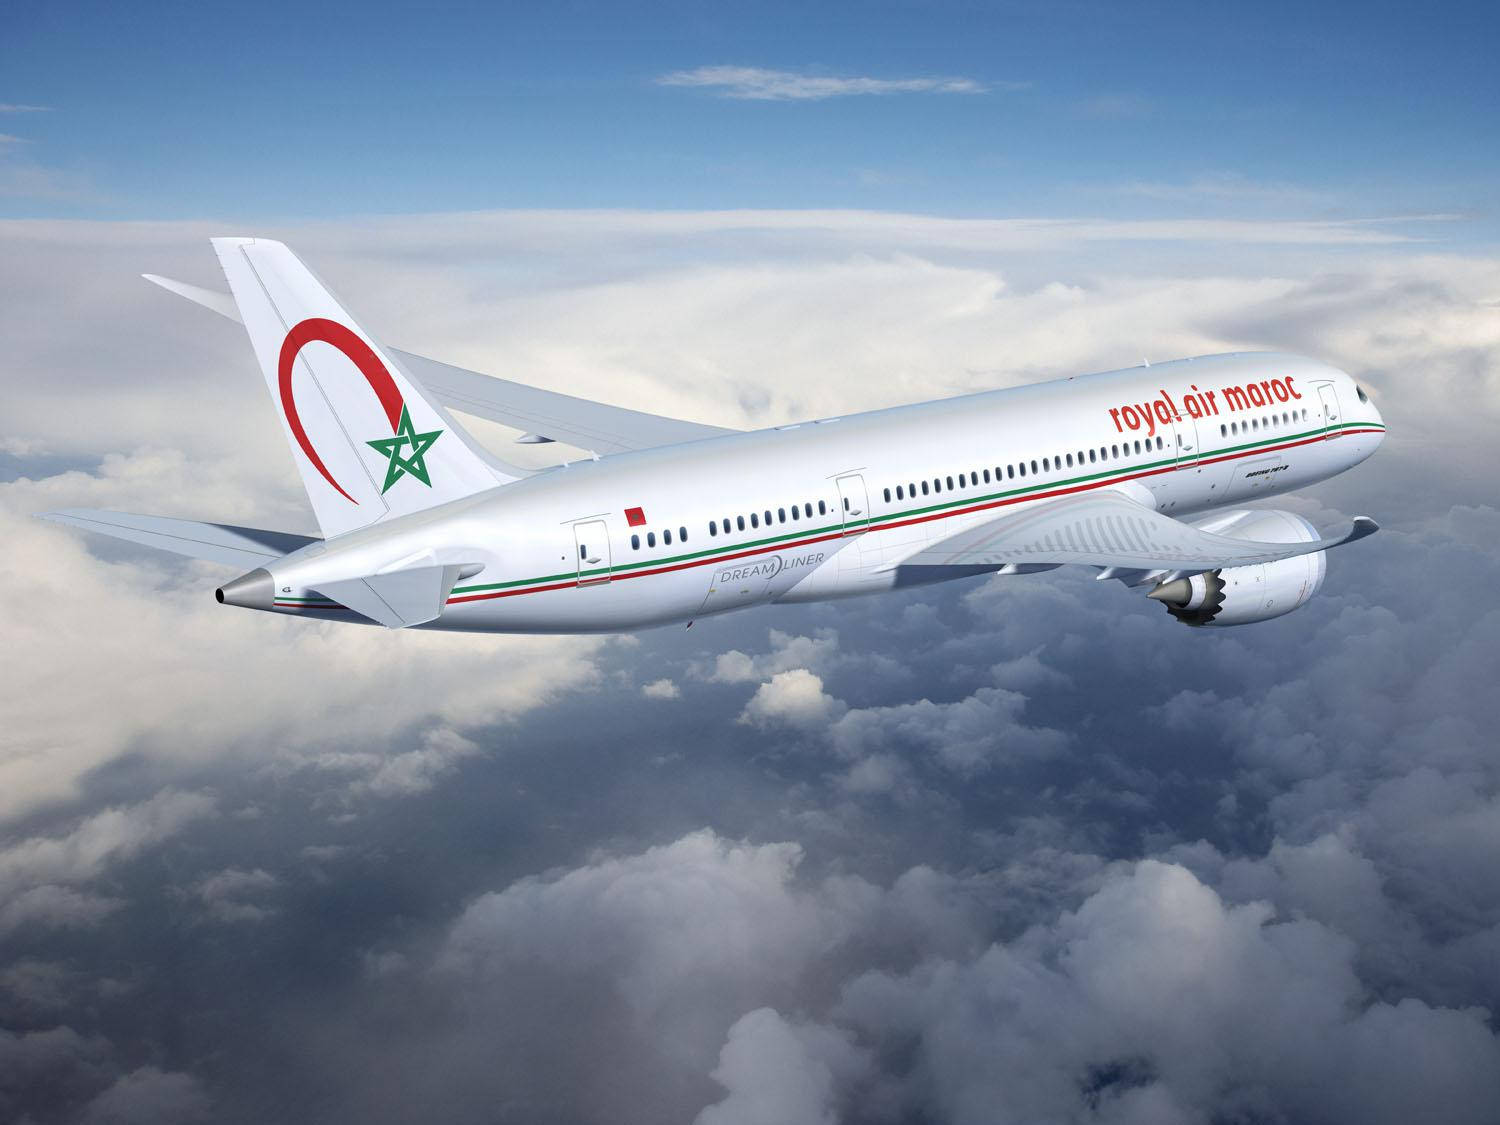 Royal Air Maroc flyvninger over skyerne Wallpaper